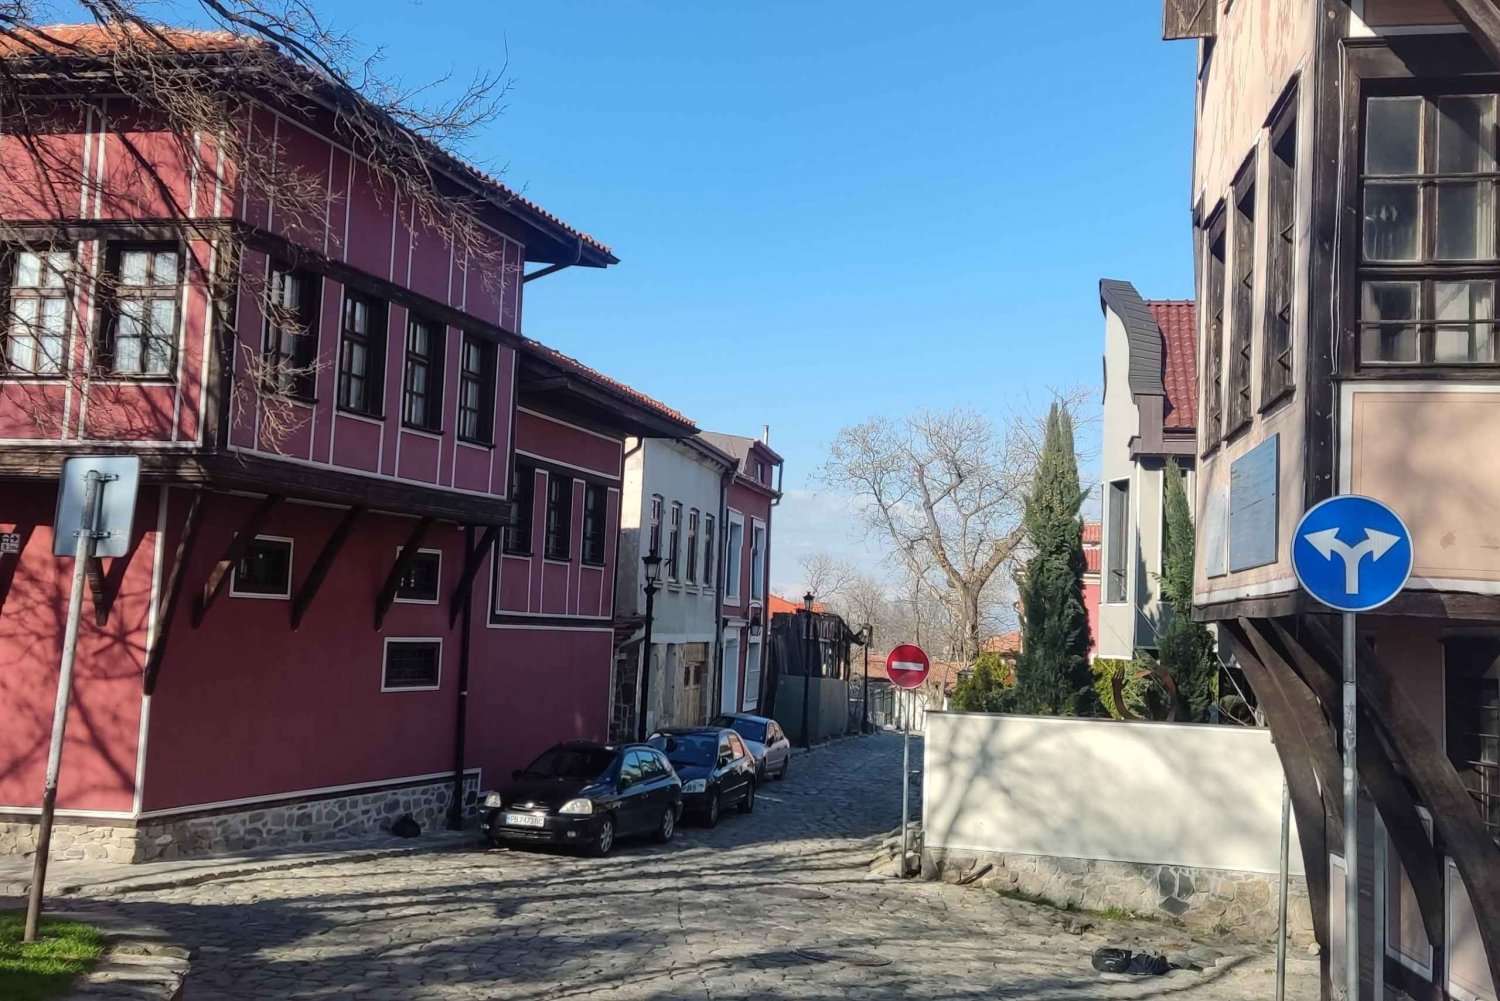 Plovdiv - Excursão de um dia para conhecer o patrimônio judaico, saindo de Sofia